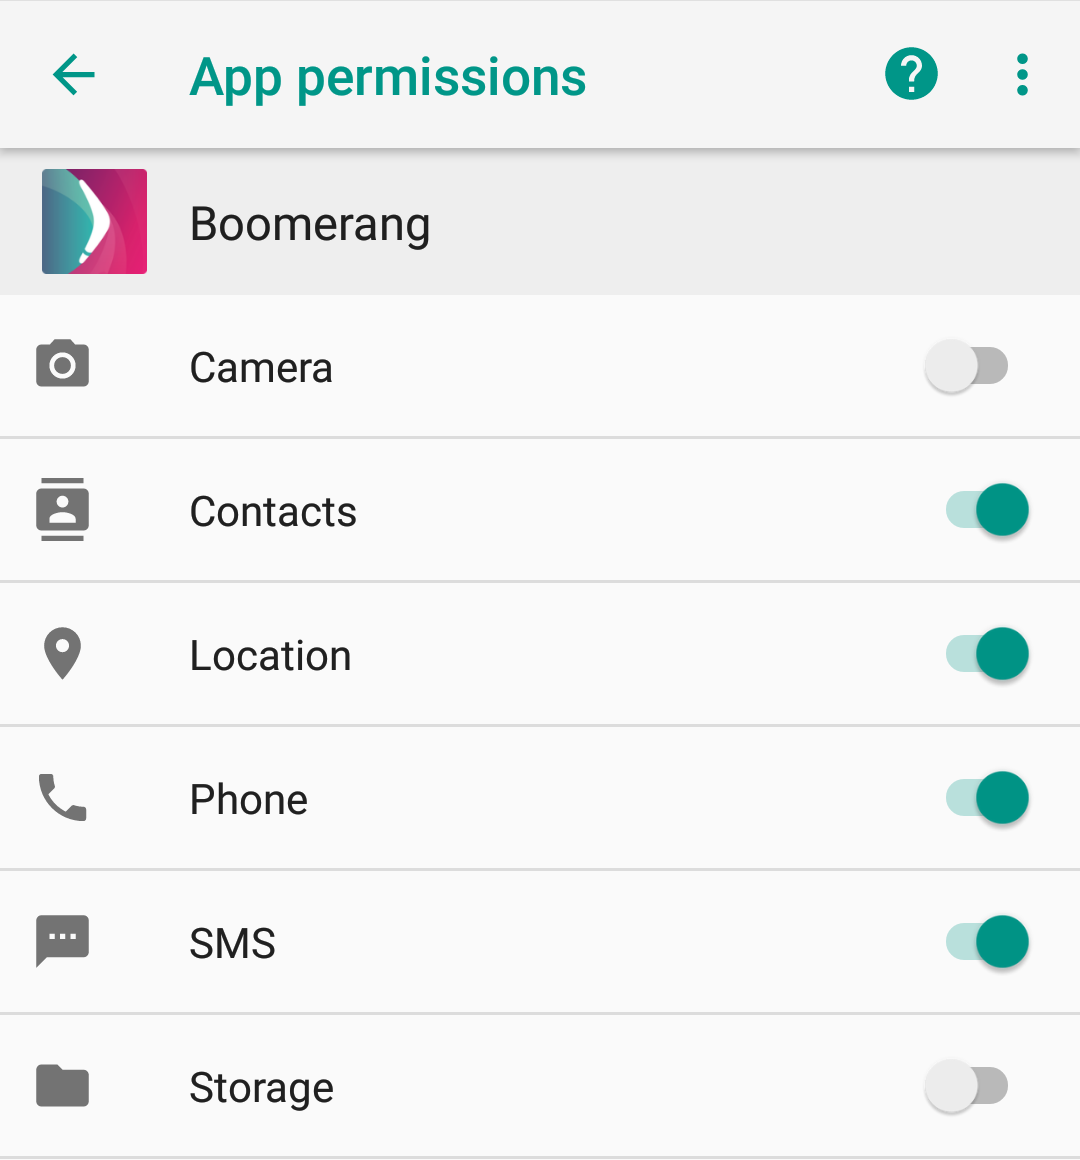 Boomerang_app_permissions.png